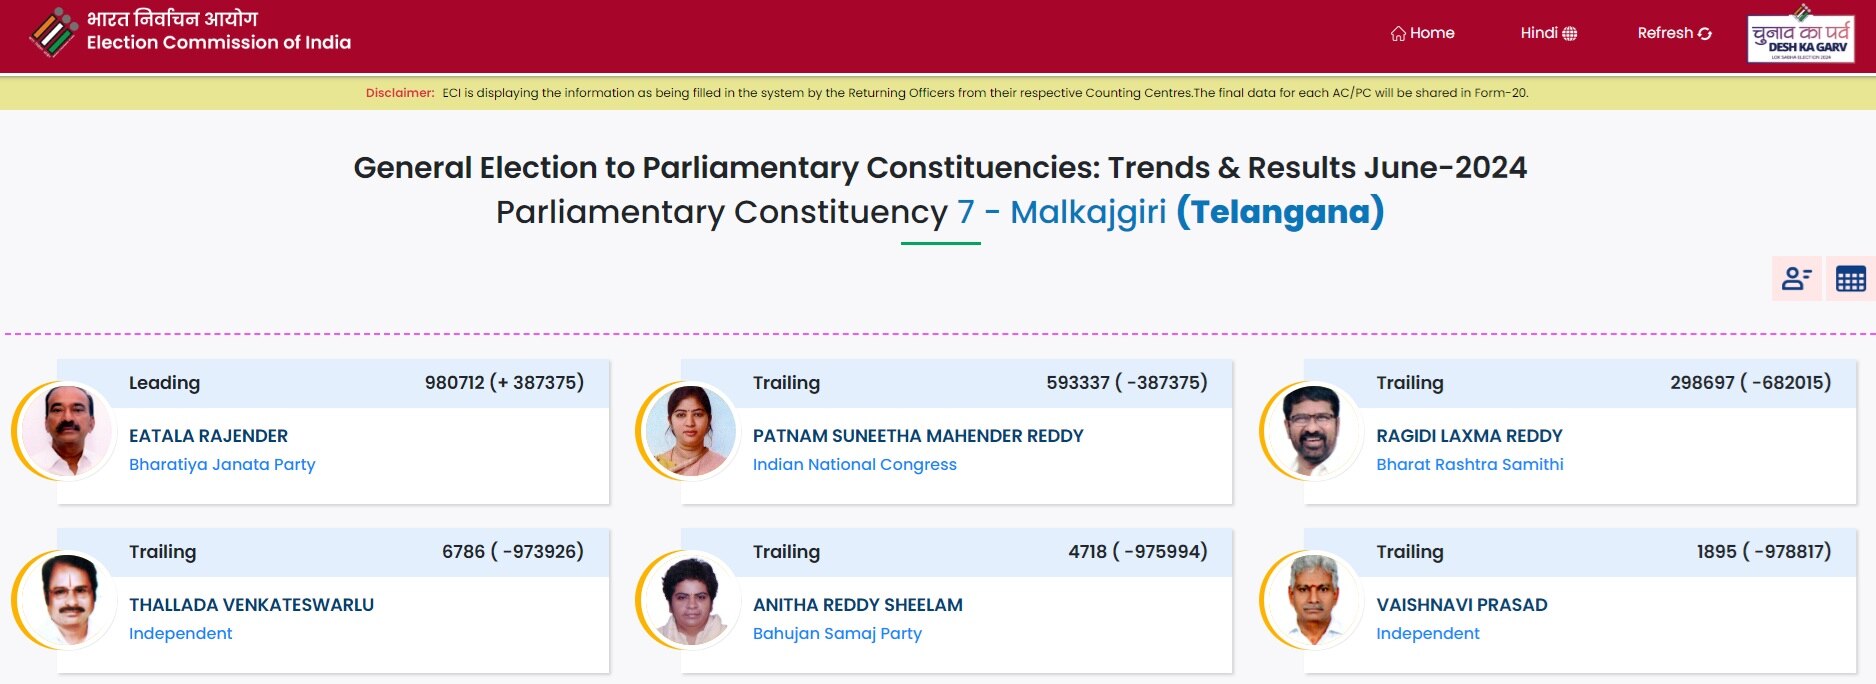 Malkajgiri Election Results 2024: ఈటల రాజేందర్ భారీ విజయం! ఇక్కడ చిత్తుచిత్తుగా ఓడిపోయిన కాంగ్రెస్, బీఆర్ఎస్